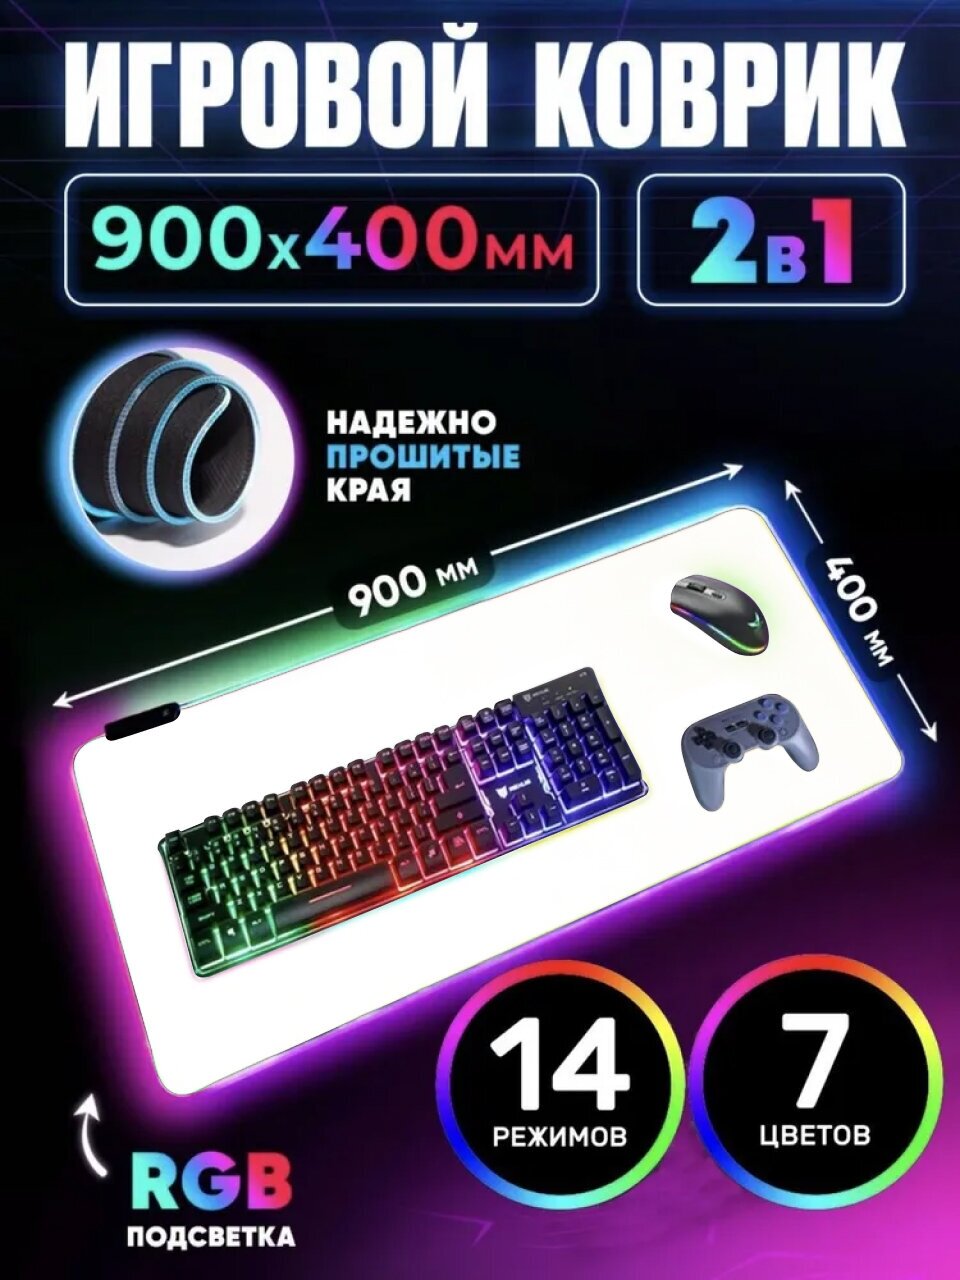 Игровой коврик для мыши с RGB подсветкой 900x400х4 белый водоотталкивающее покрытие 14 режимов коврик для клавиатуры и мыши